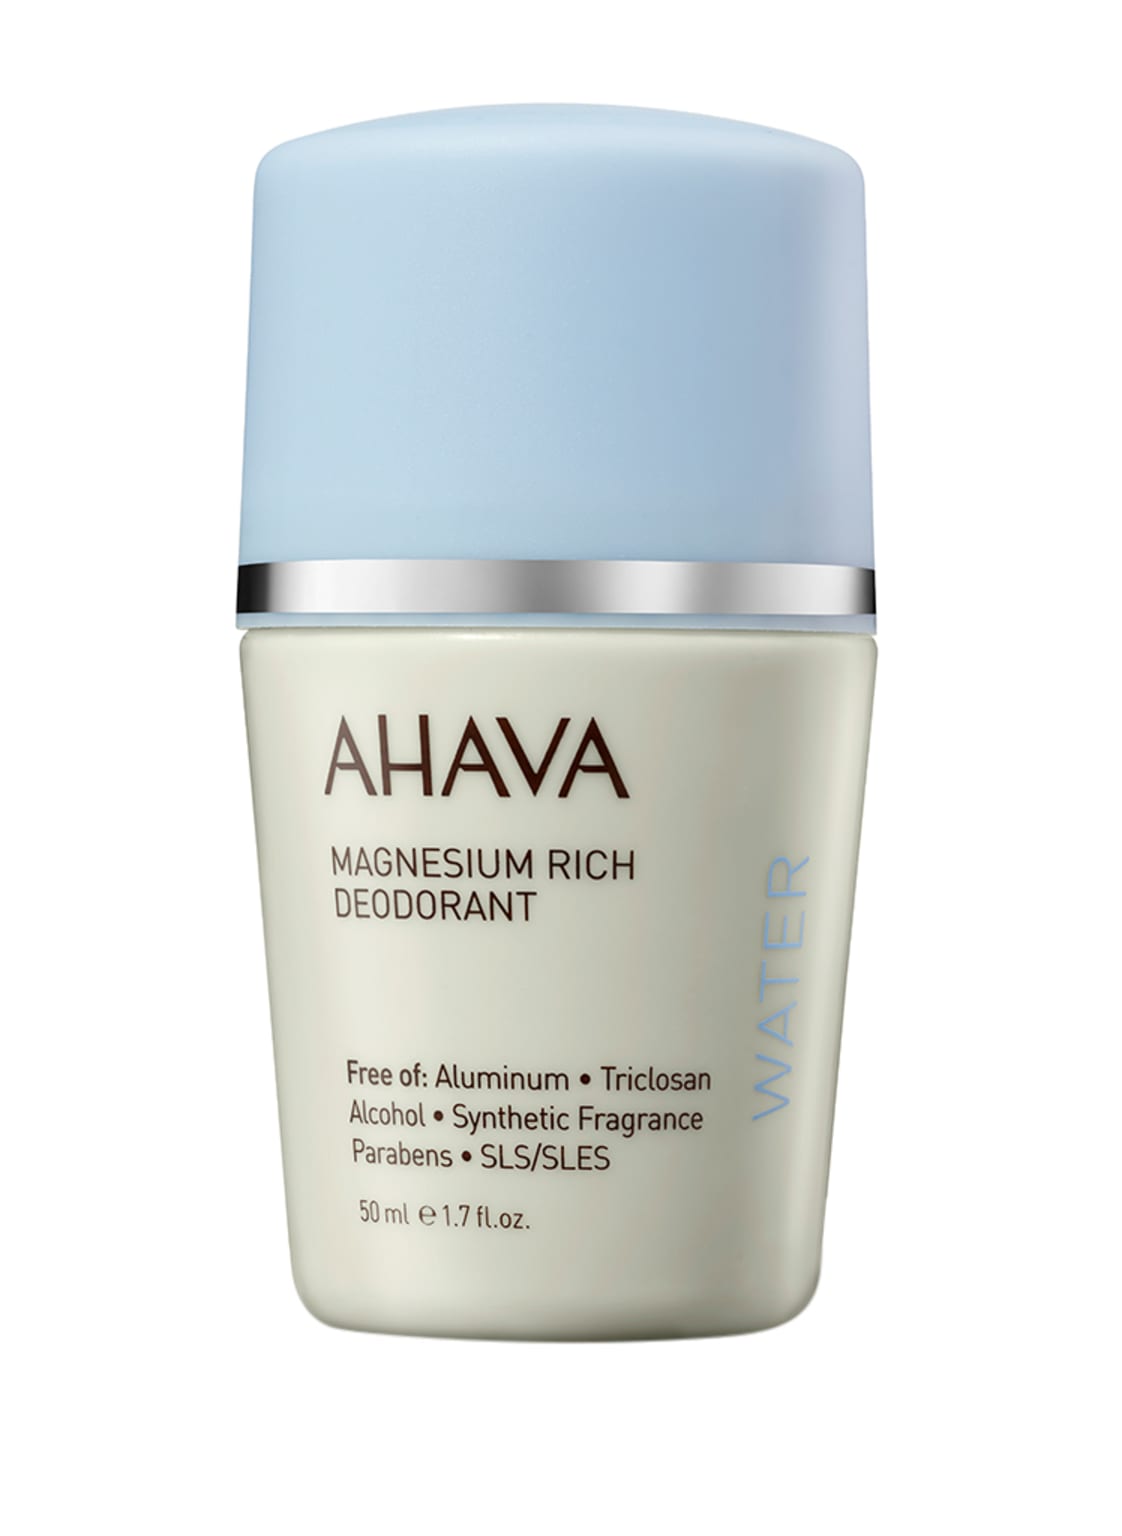 Image of Ahava Magnesium Rich Deodorant Deodorant 50 ml